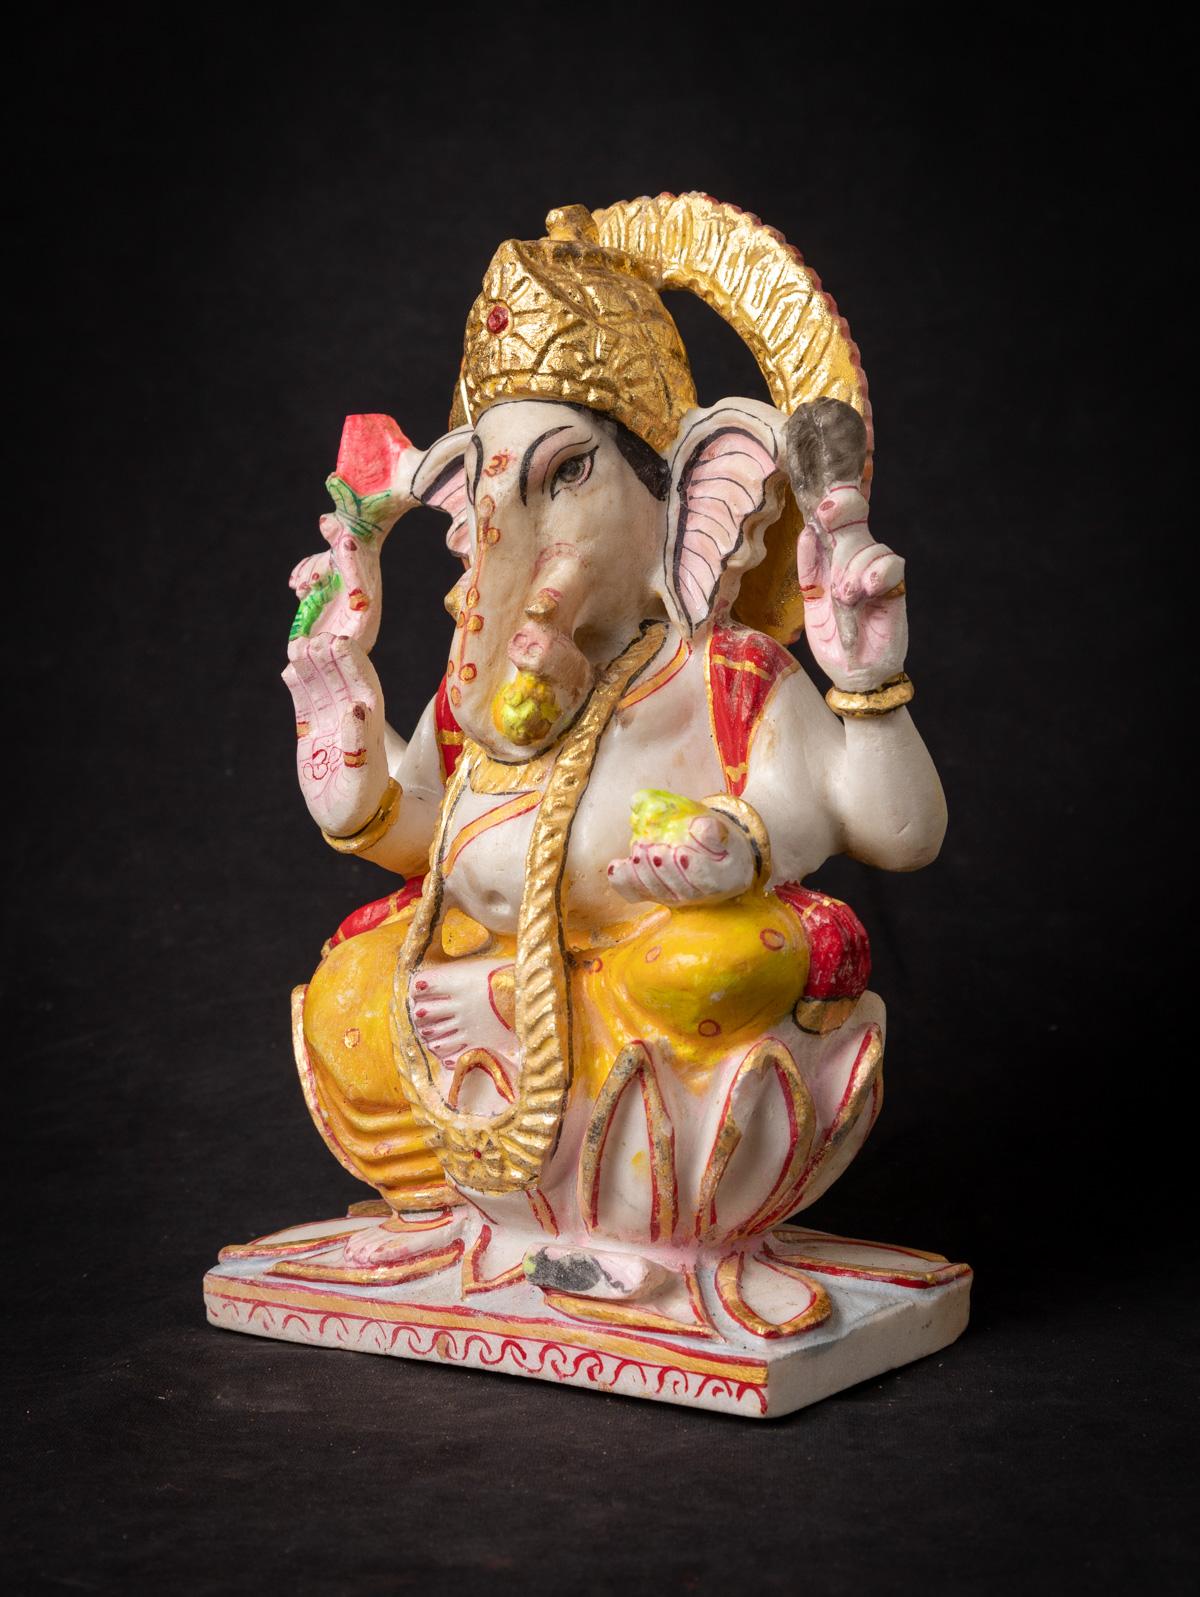 Cette statue de Ganesha en marbre indien est une magnifique œuvre d'art qui incarne l'essence de la divinité à tête d'éléphant, Lord Ganesha. Fabriqué en marbre, il mesure 28,5 cm de haut, pour une largeur de 17,8 cm et une profondeur de 9 cm. Bien